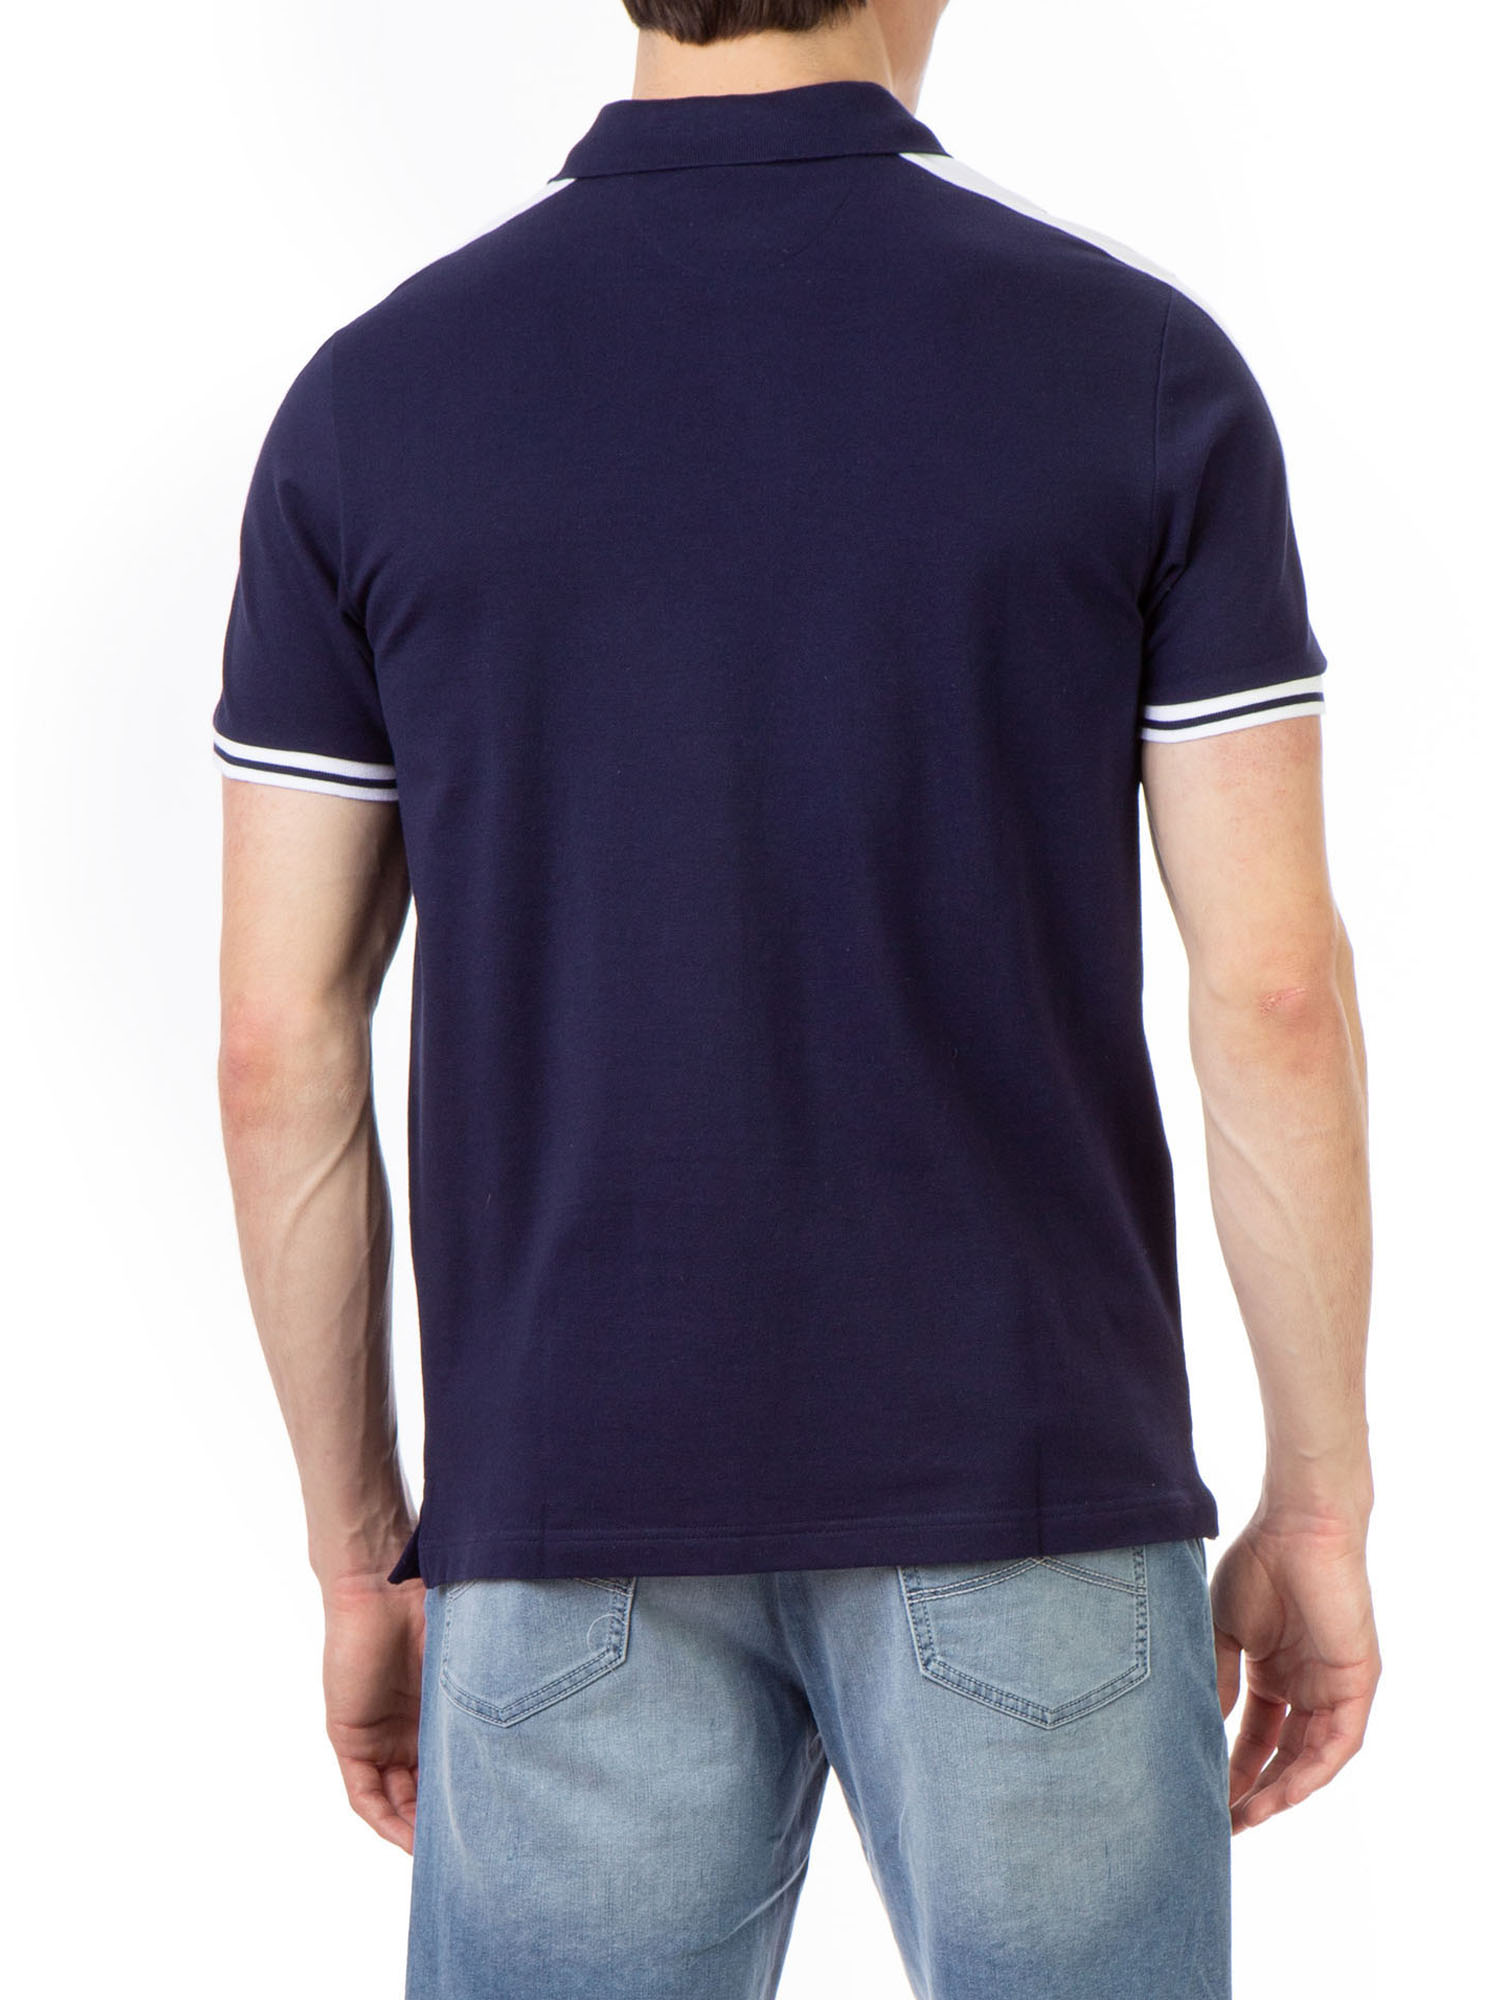 U.S. Polo Assn. Men's Embossed Logo Pique Polo Shirt - image 5 of 6